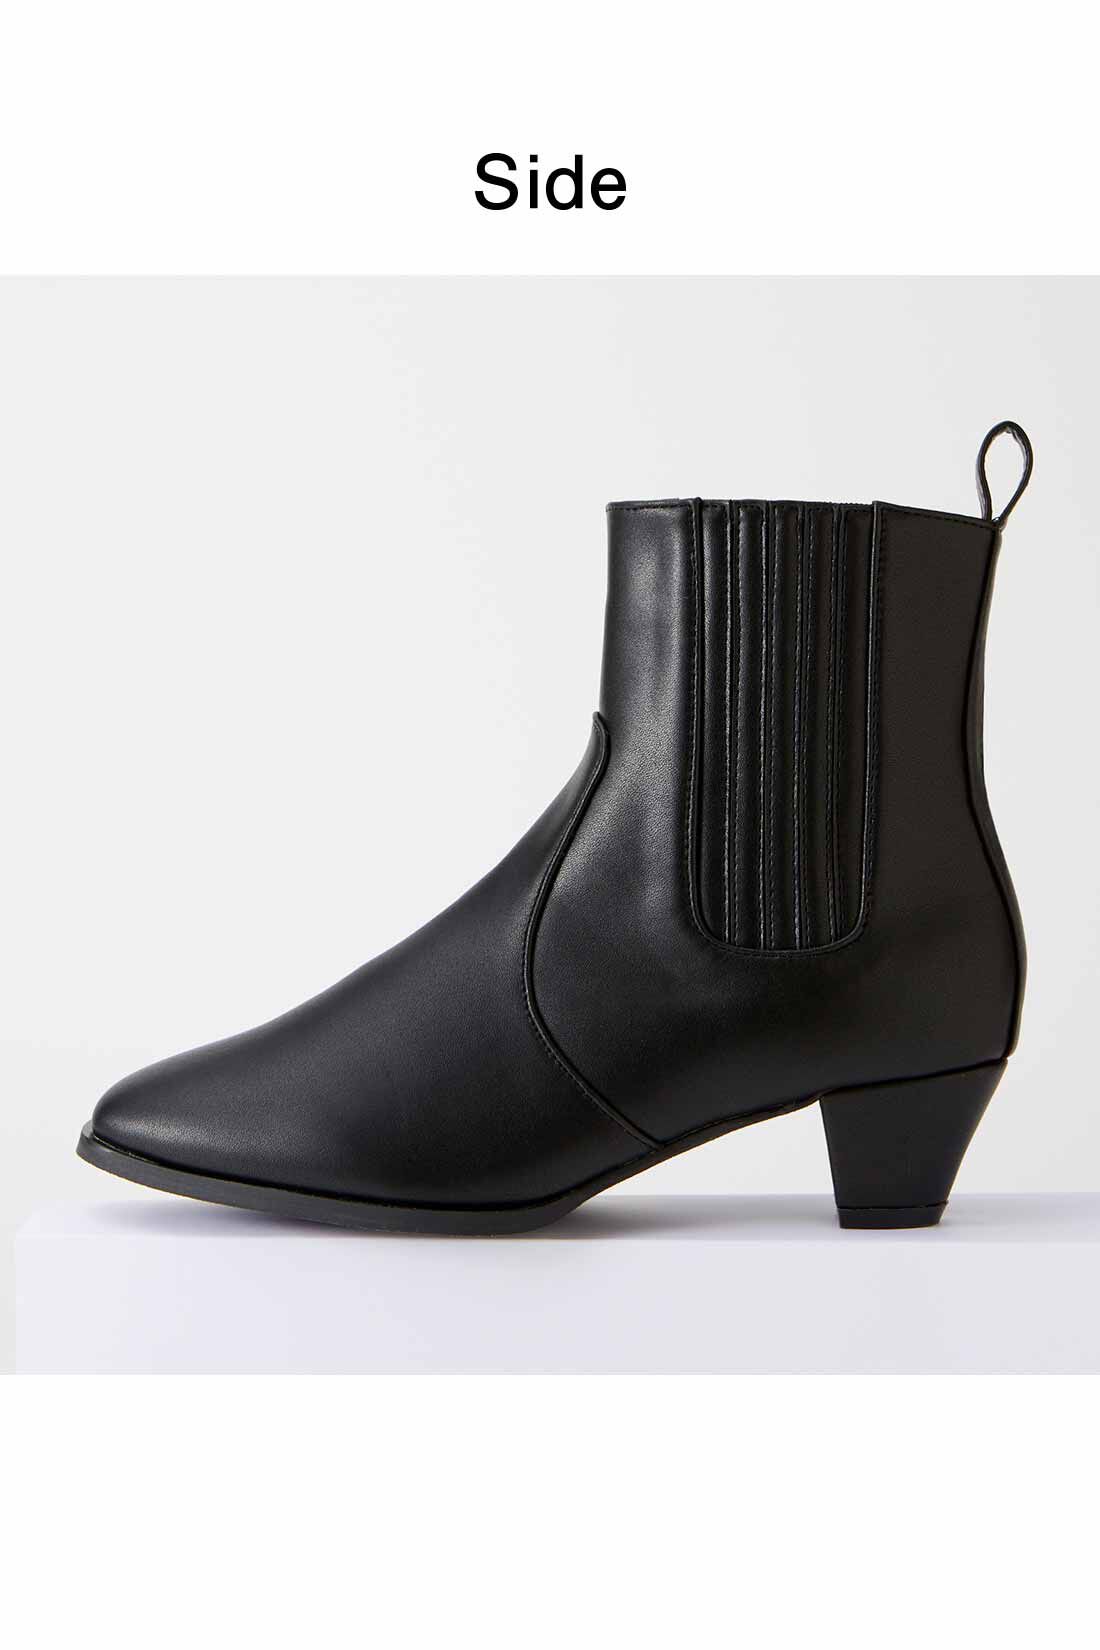 IEDIT[イディット]　どんなコーデにもすっきり履ける きれい見えサイドゴムショートブーツ〈ブラック〉|高すぎず低すぎない、美脚見えする4.5cmヒール。